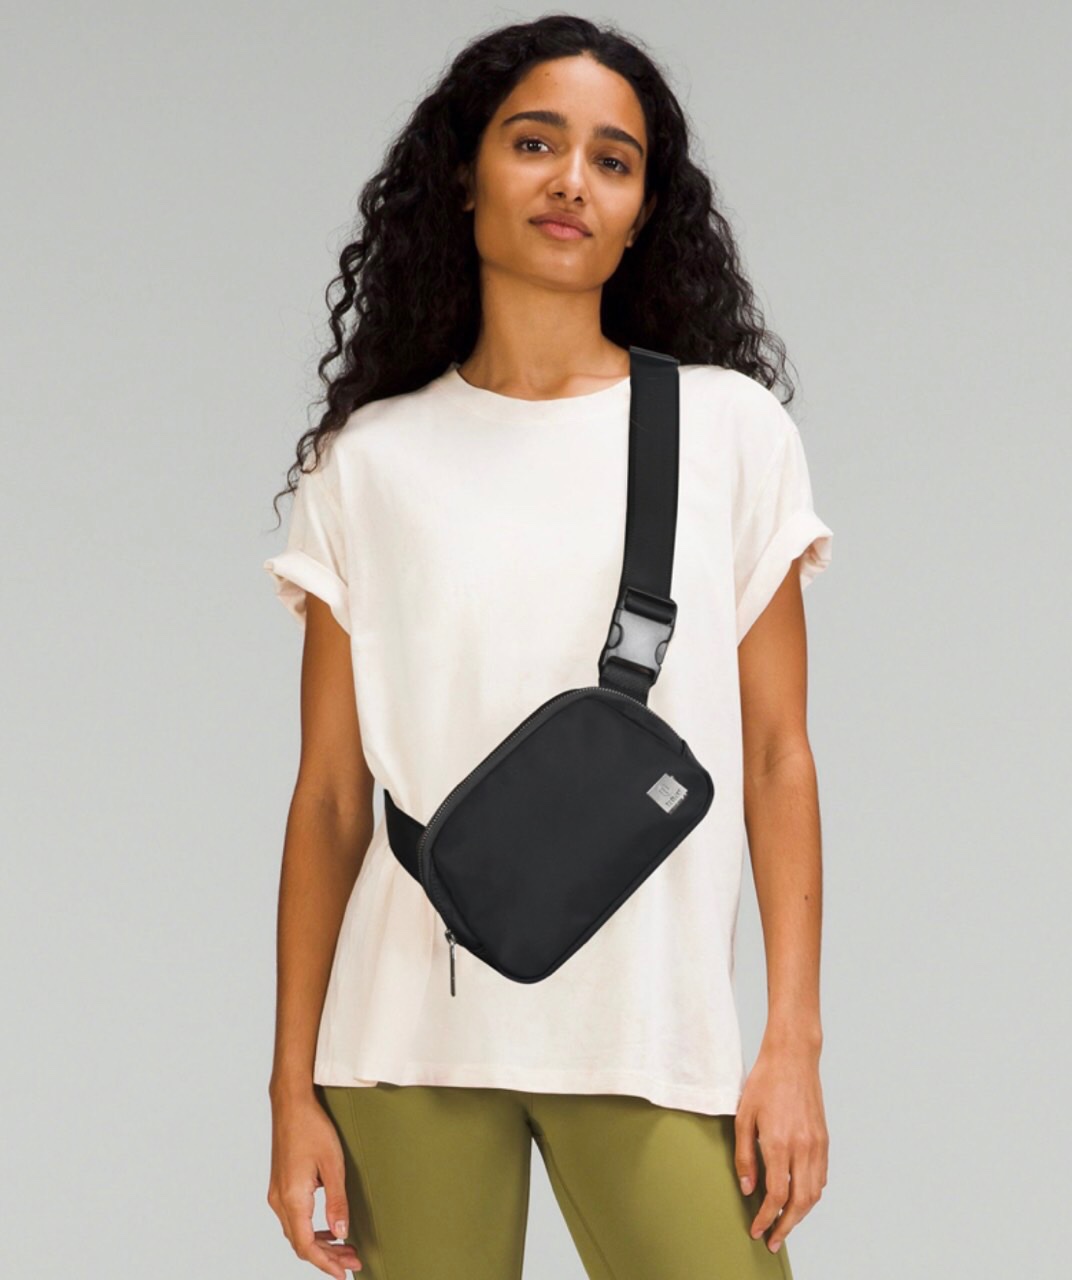 Túi đeo chéo Wiwu Lulu Crossbody Bag để chứa phụ kiện điện tử, được làm bằng chất liệu chống thấm nước, chống bám bẩn, dễ lau chùi và chống mài mòn - Hàng chính hãng